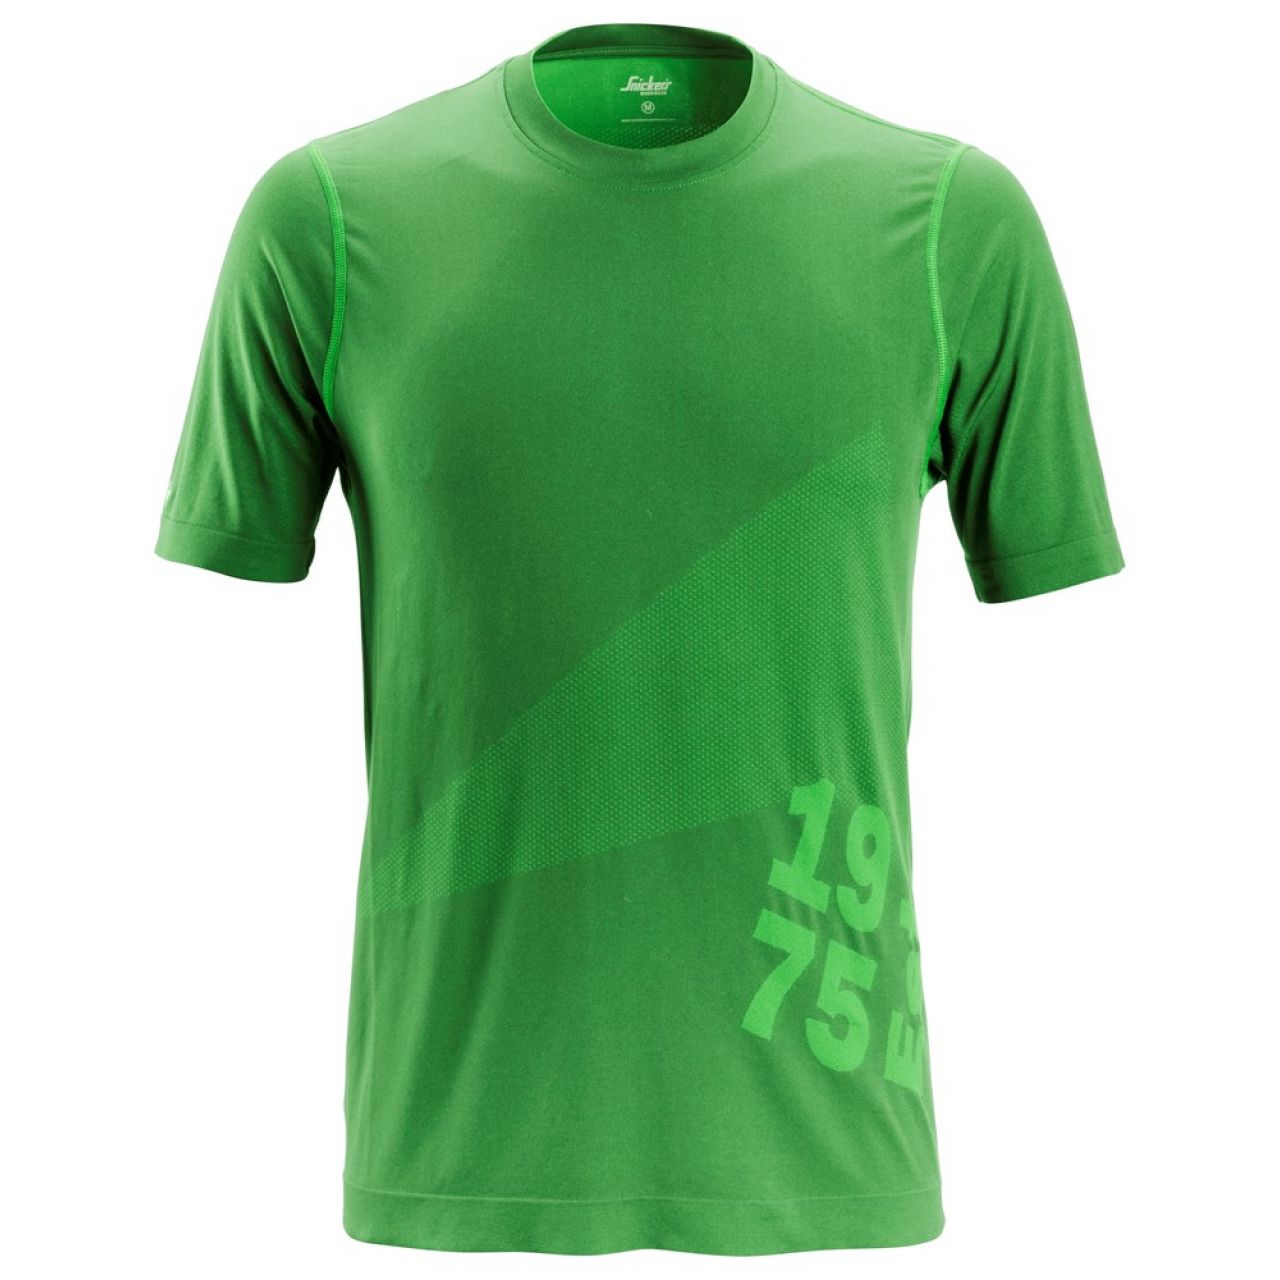 2519 Camiseta de manga corta FlexiWork 37.5® Tech verde manzana talla M